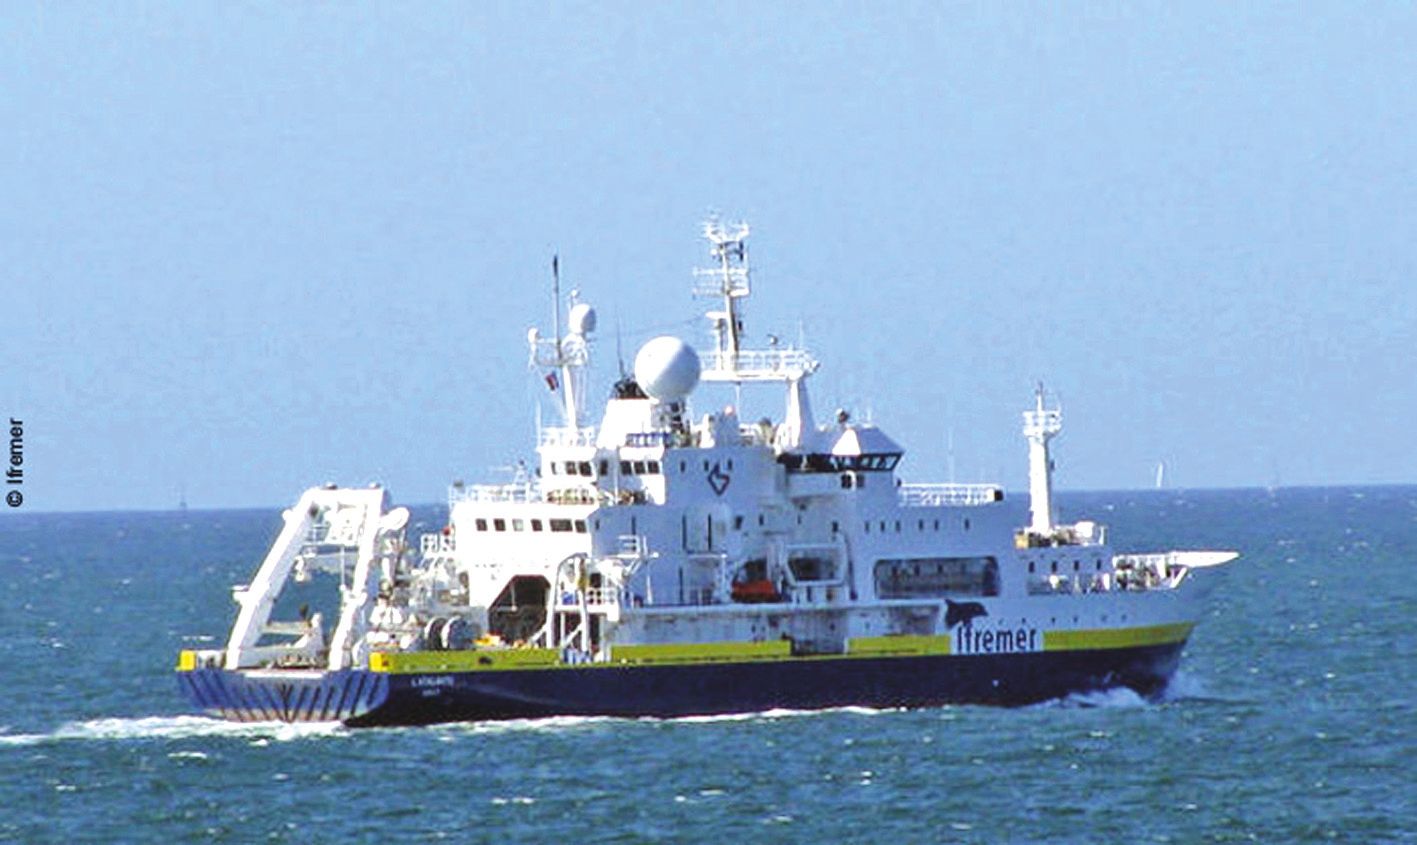 L’Atalante, mise en service en 1990, est l’un des fleurons de  la flotte océanographique française. Photo Ifremer